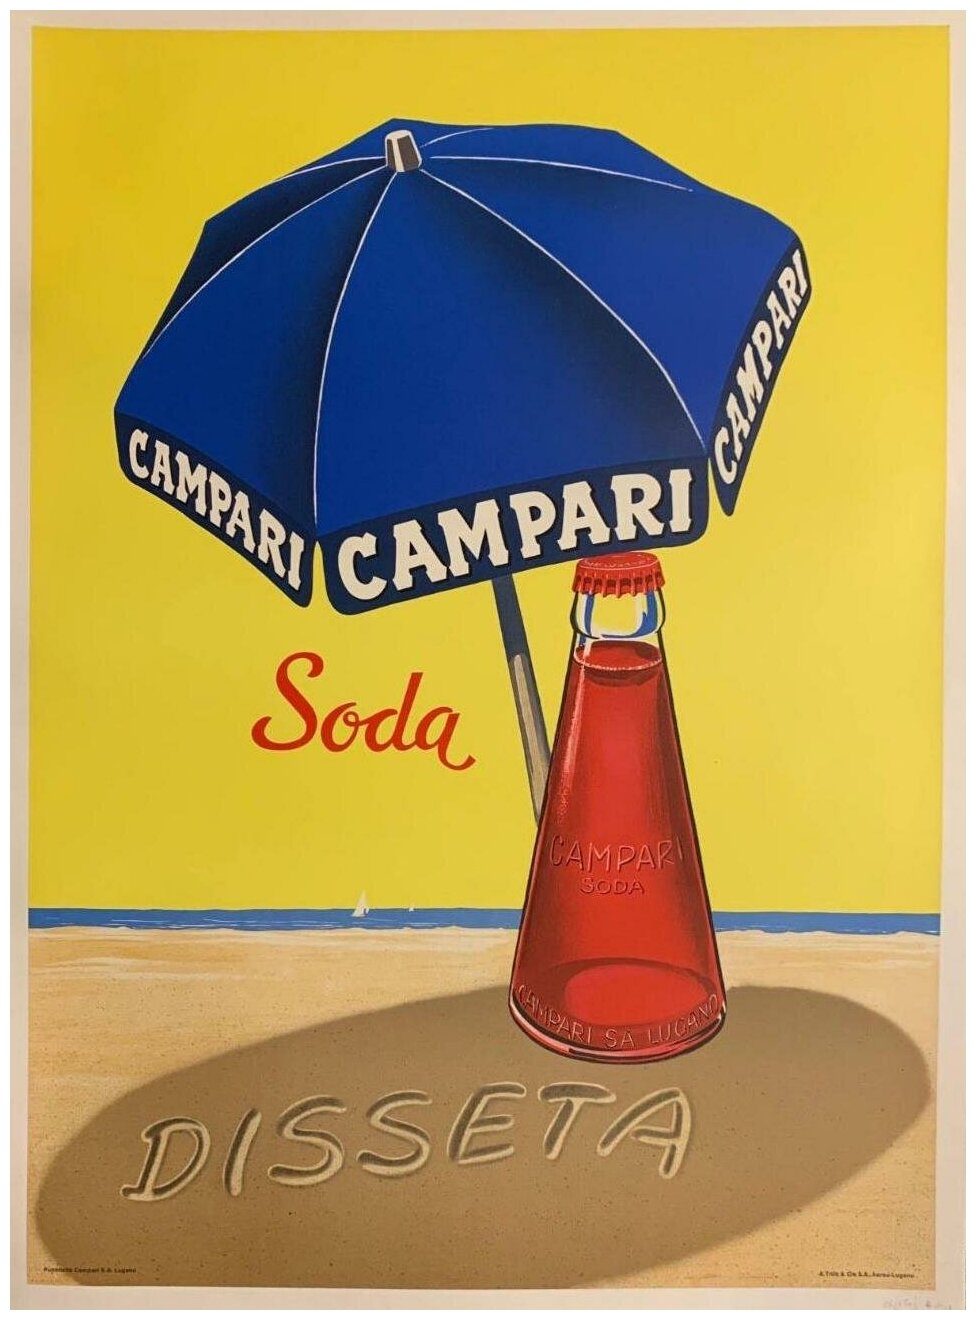 Рекламный плакат - Напиток Campari Soda Disseta